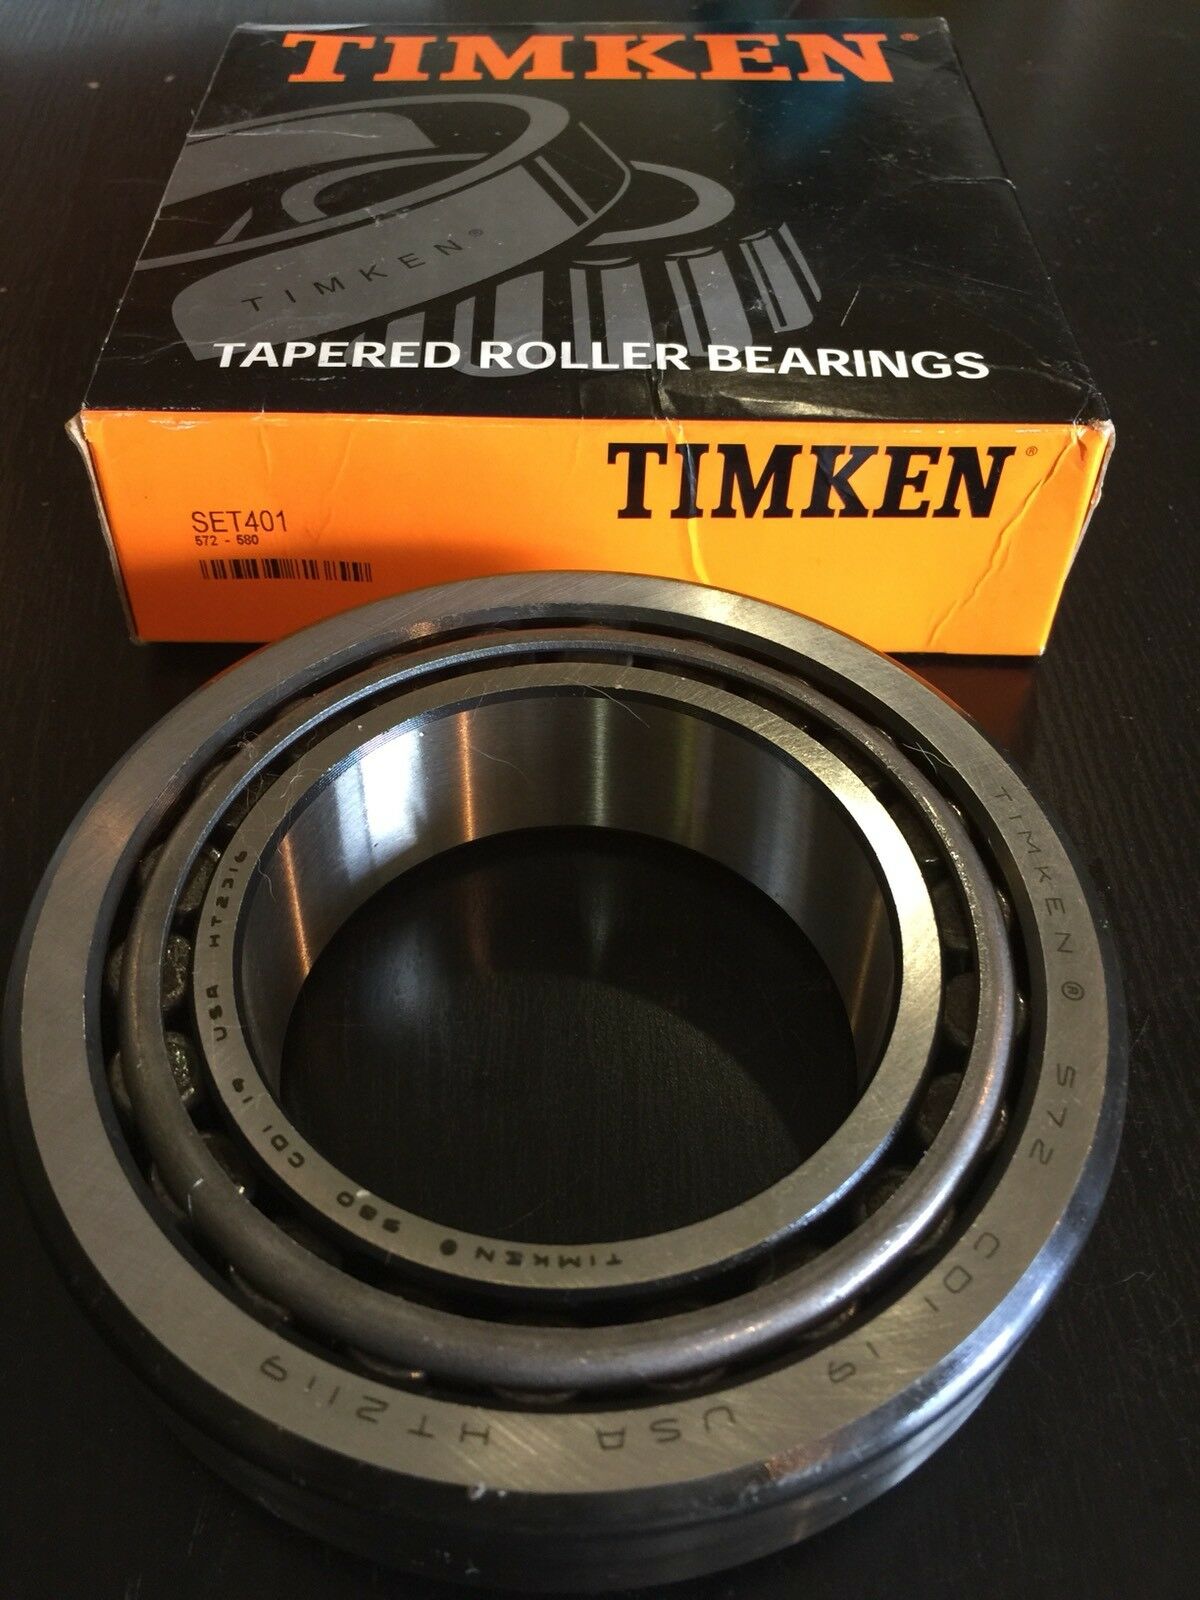 timken bearing